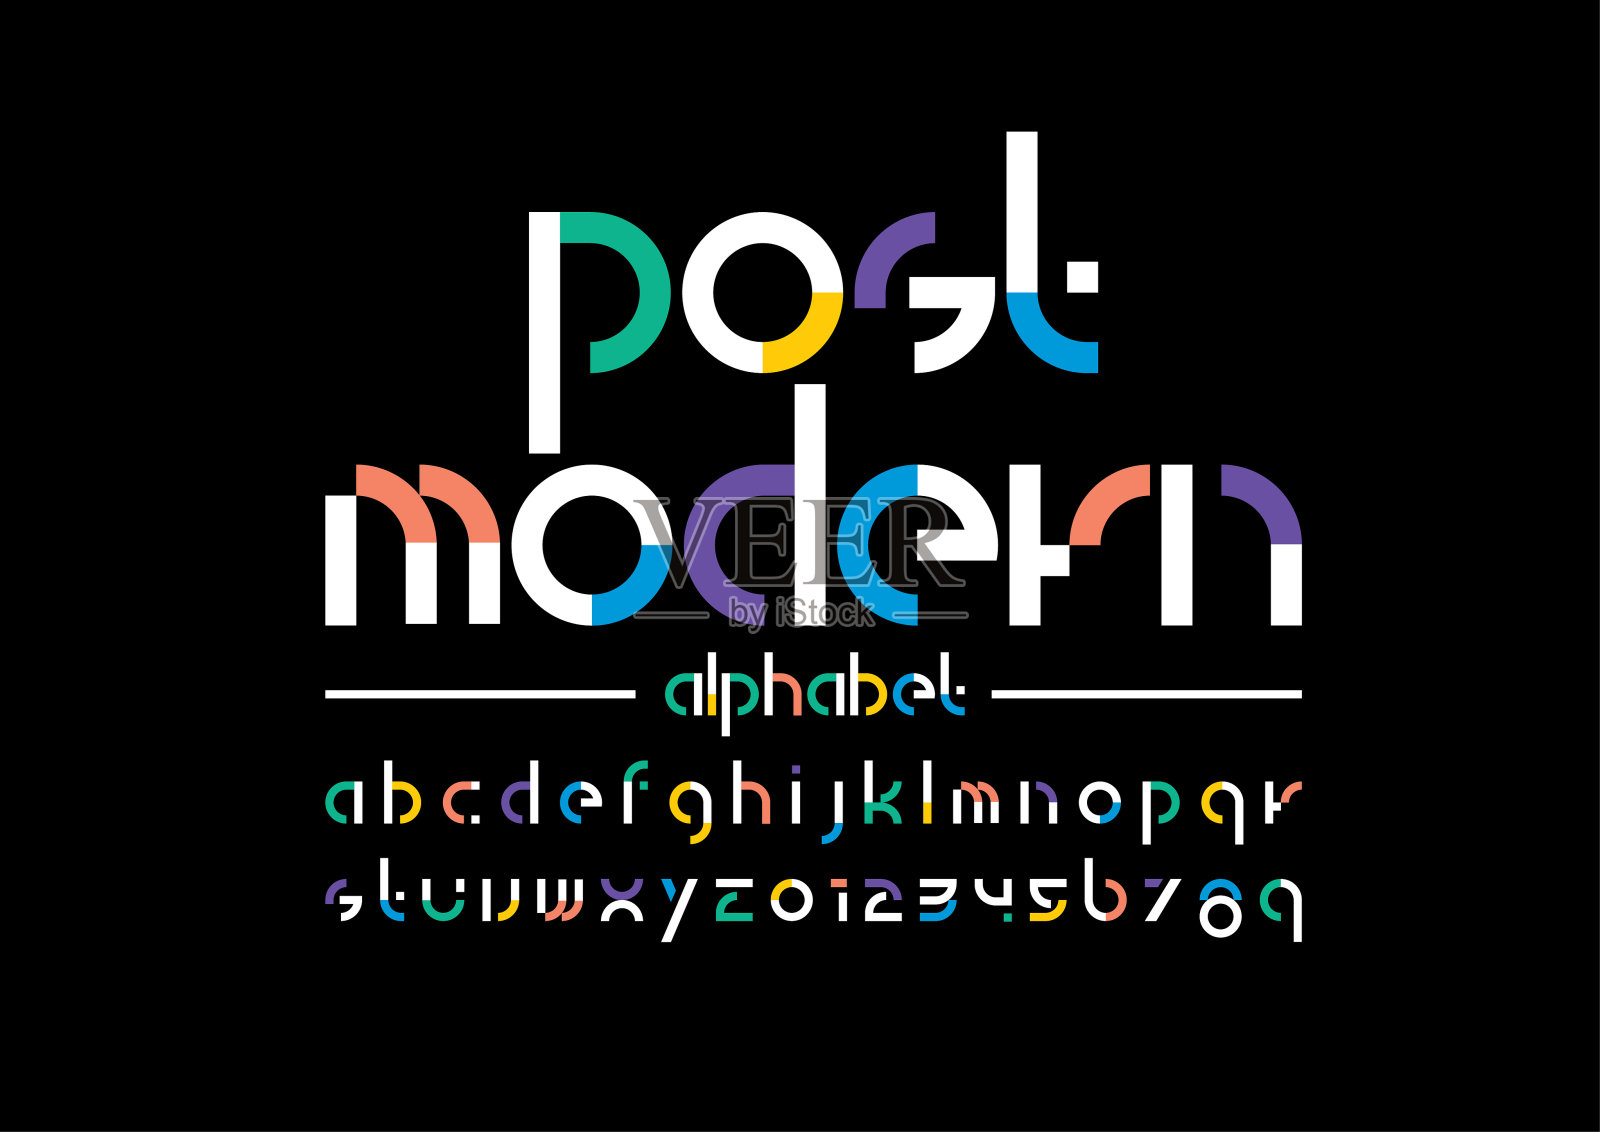 抽象的字母设计元素图片